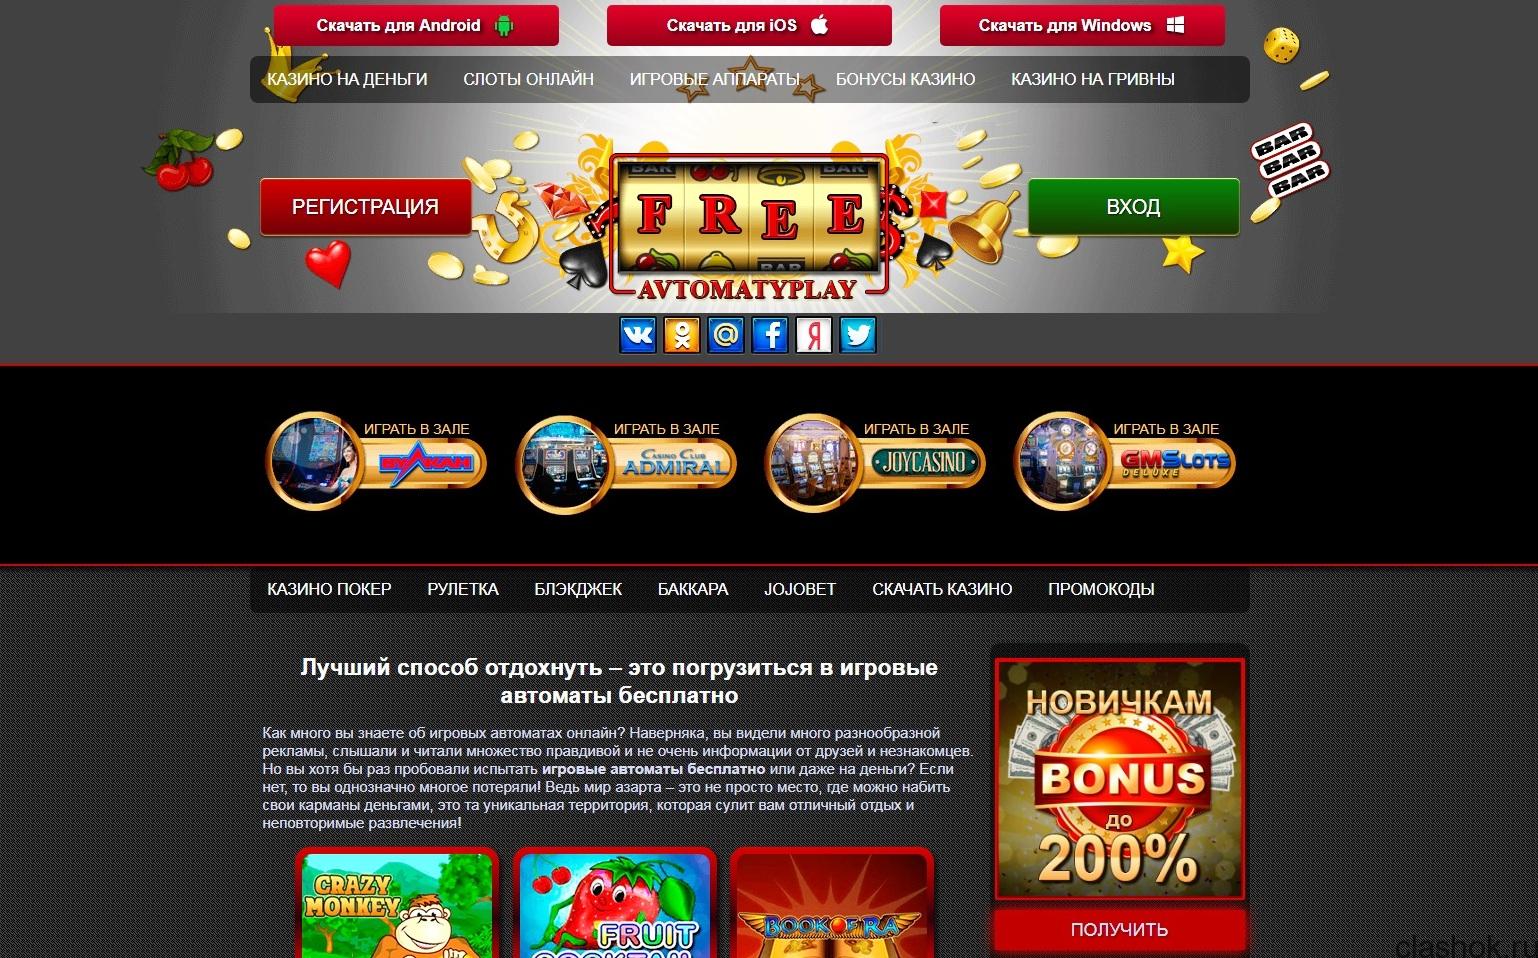 Онлайн казино украина на гривны рулетка online poker casino games